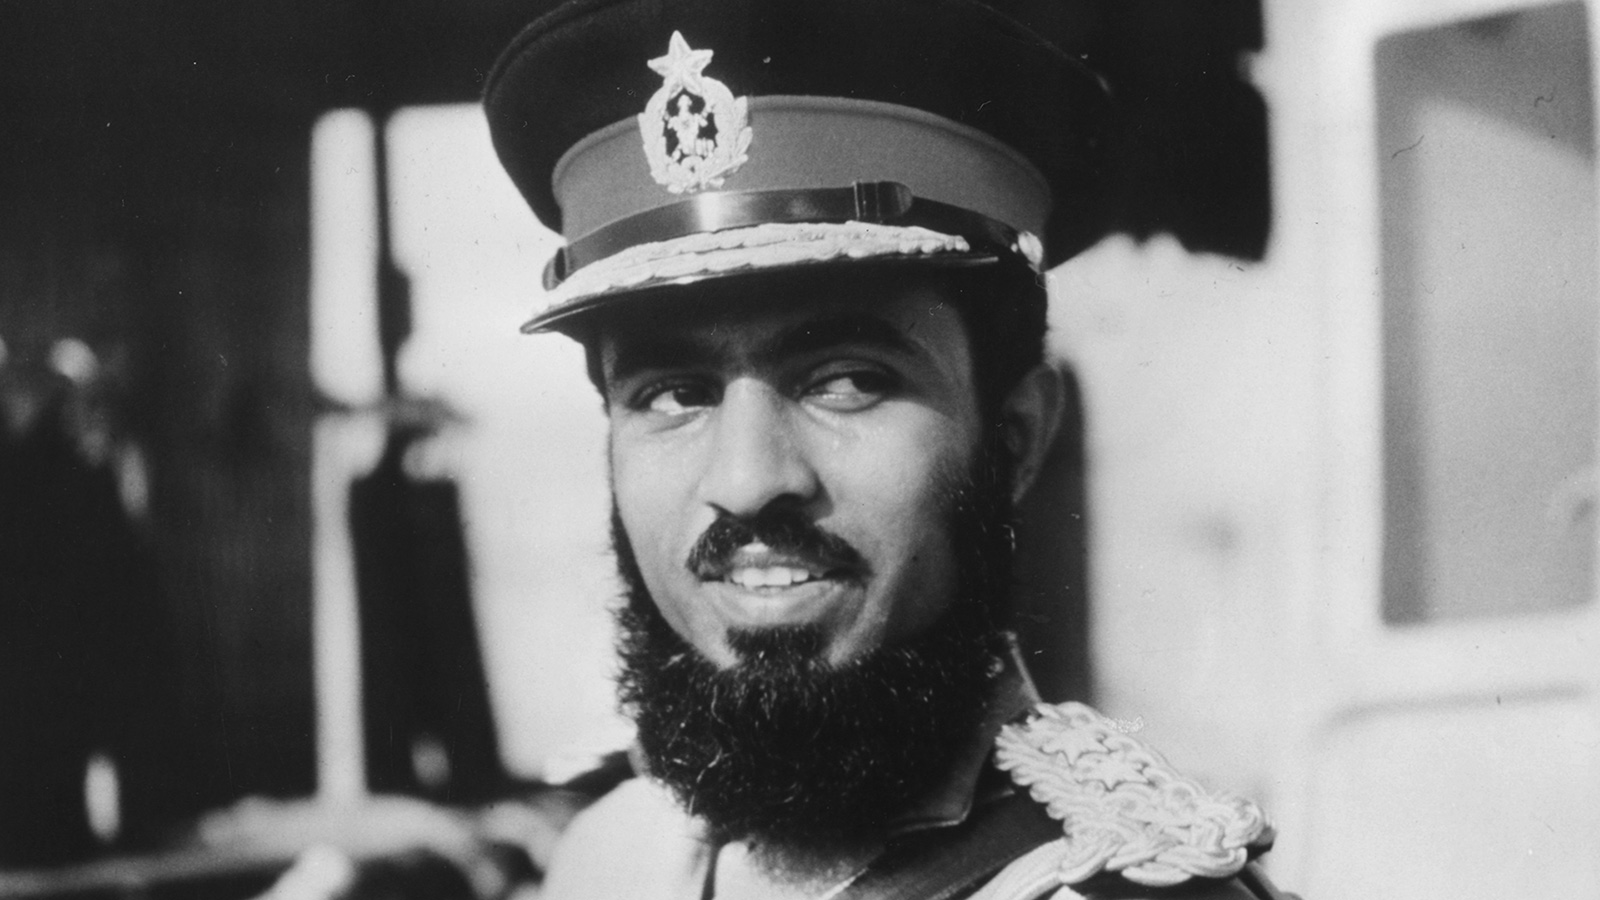 14 يوليو 1973: السلطان قابوس بن سعيد -طيب الله ثراه- يدعو أبناء الوطن إلى العودة لبناء بلدهم